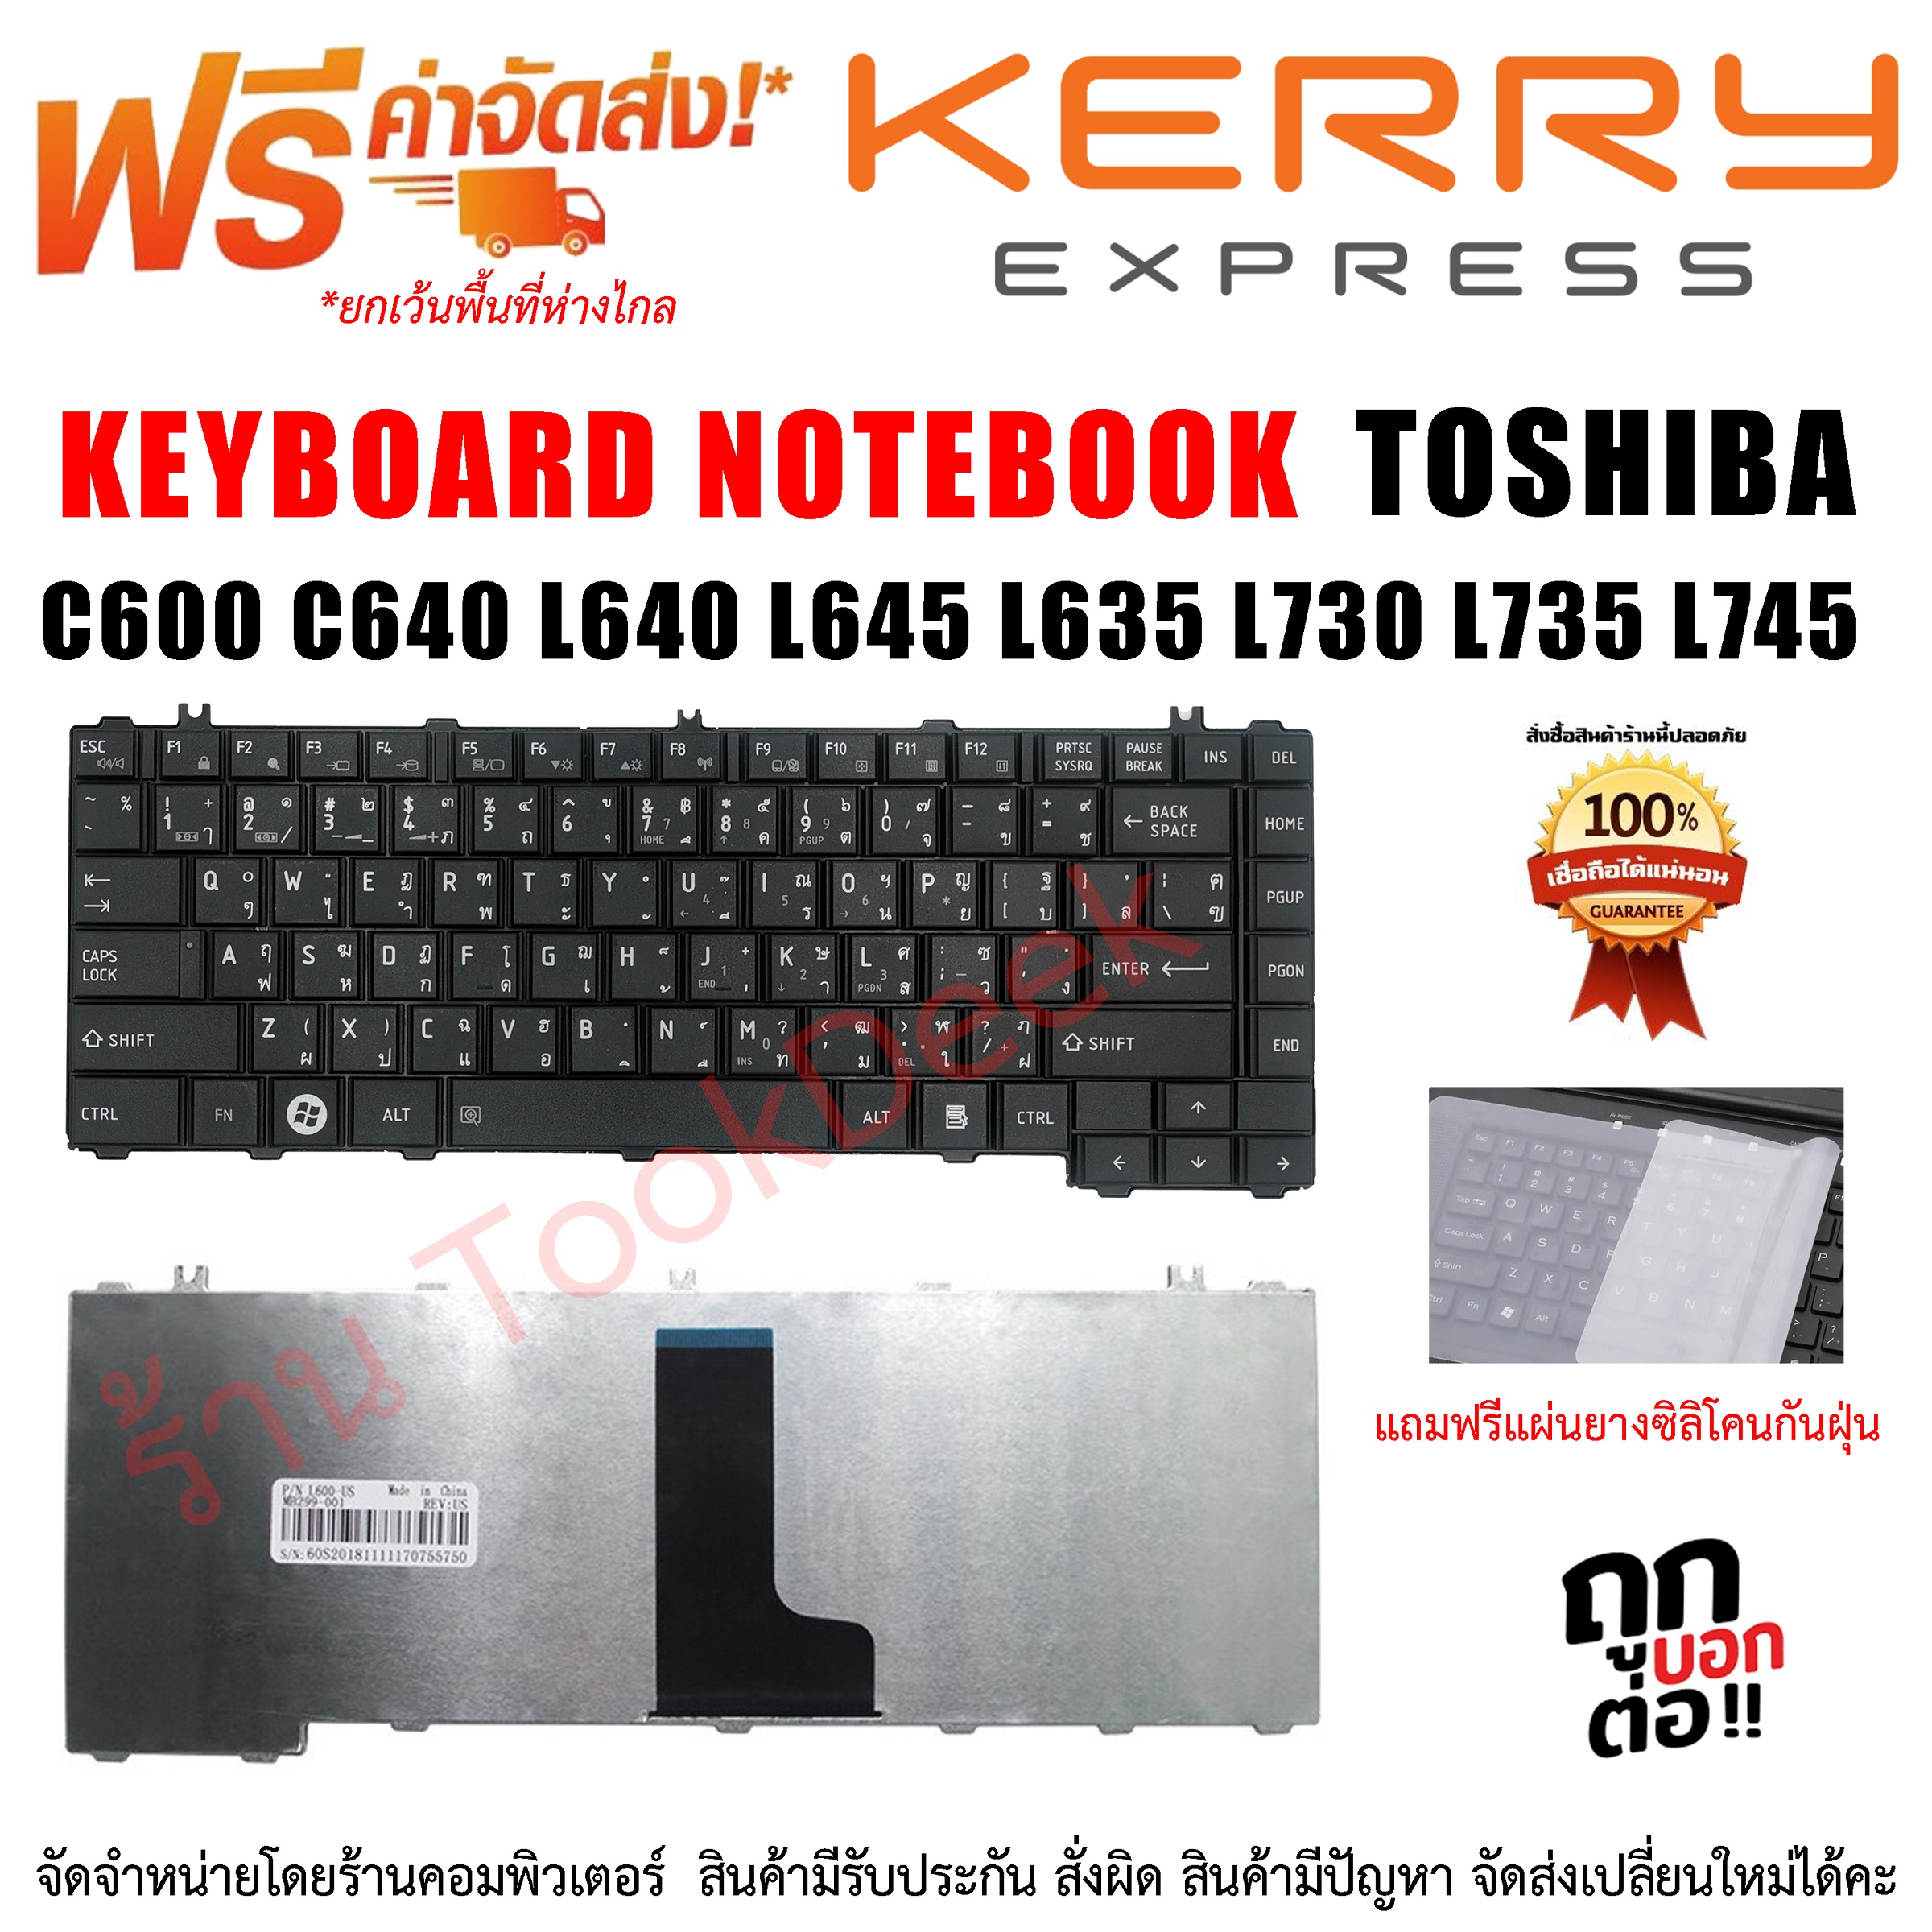 KEYBOARD TOSHIBA คีย์บอร์ด Toshiba Satellite C600 C640 L640 L645 L635 L730 L735 L745 ภาษาไทย-อังกฤษ